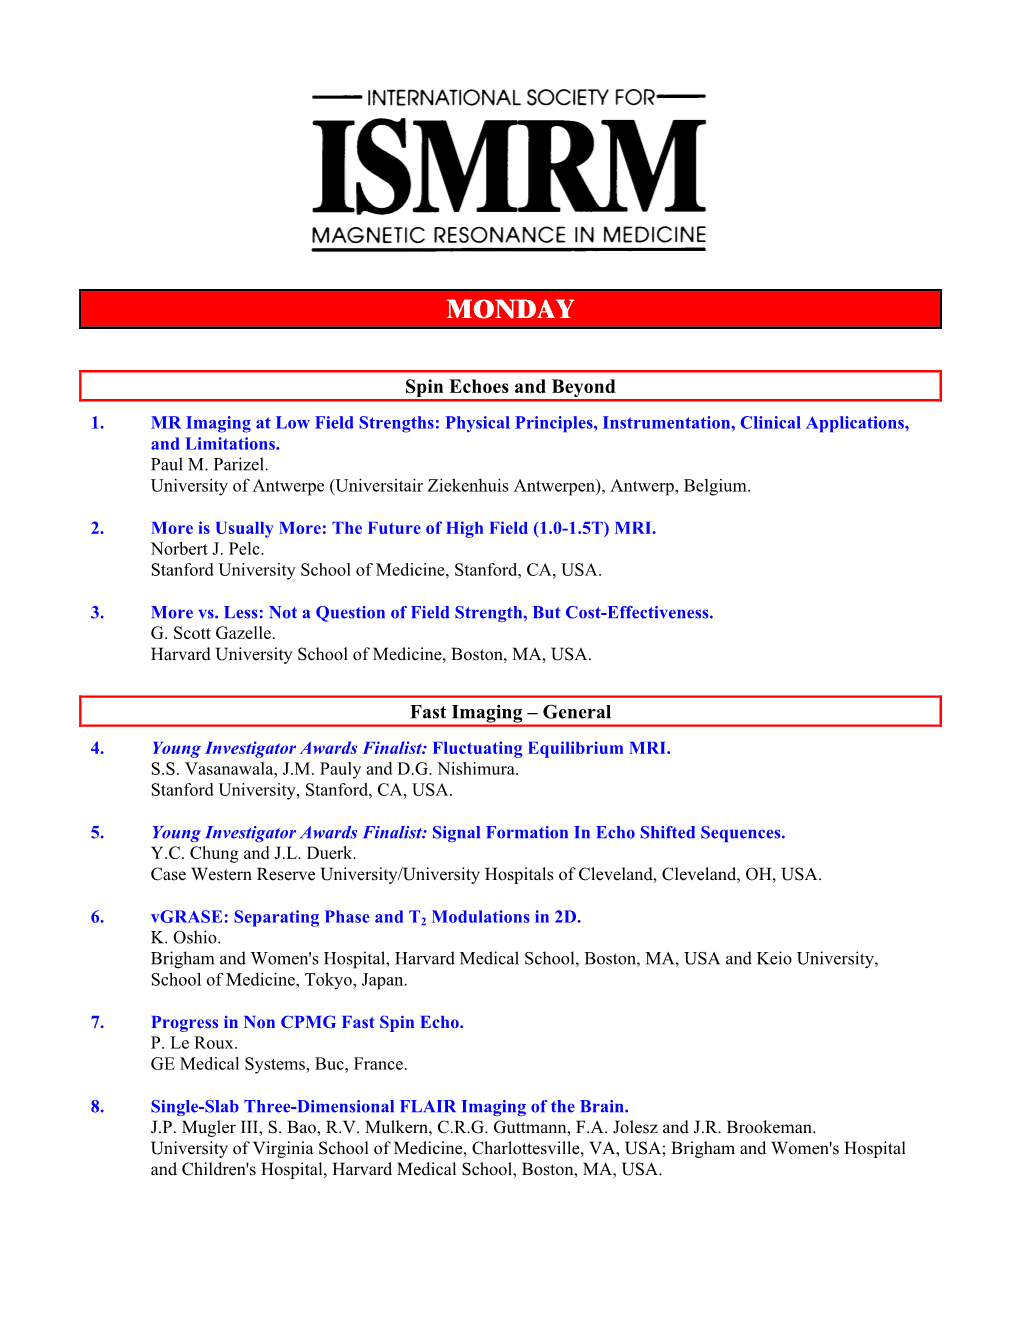 1999 ISMRM CD Program